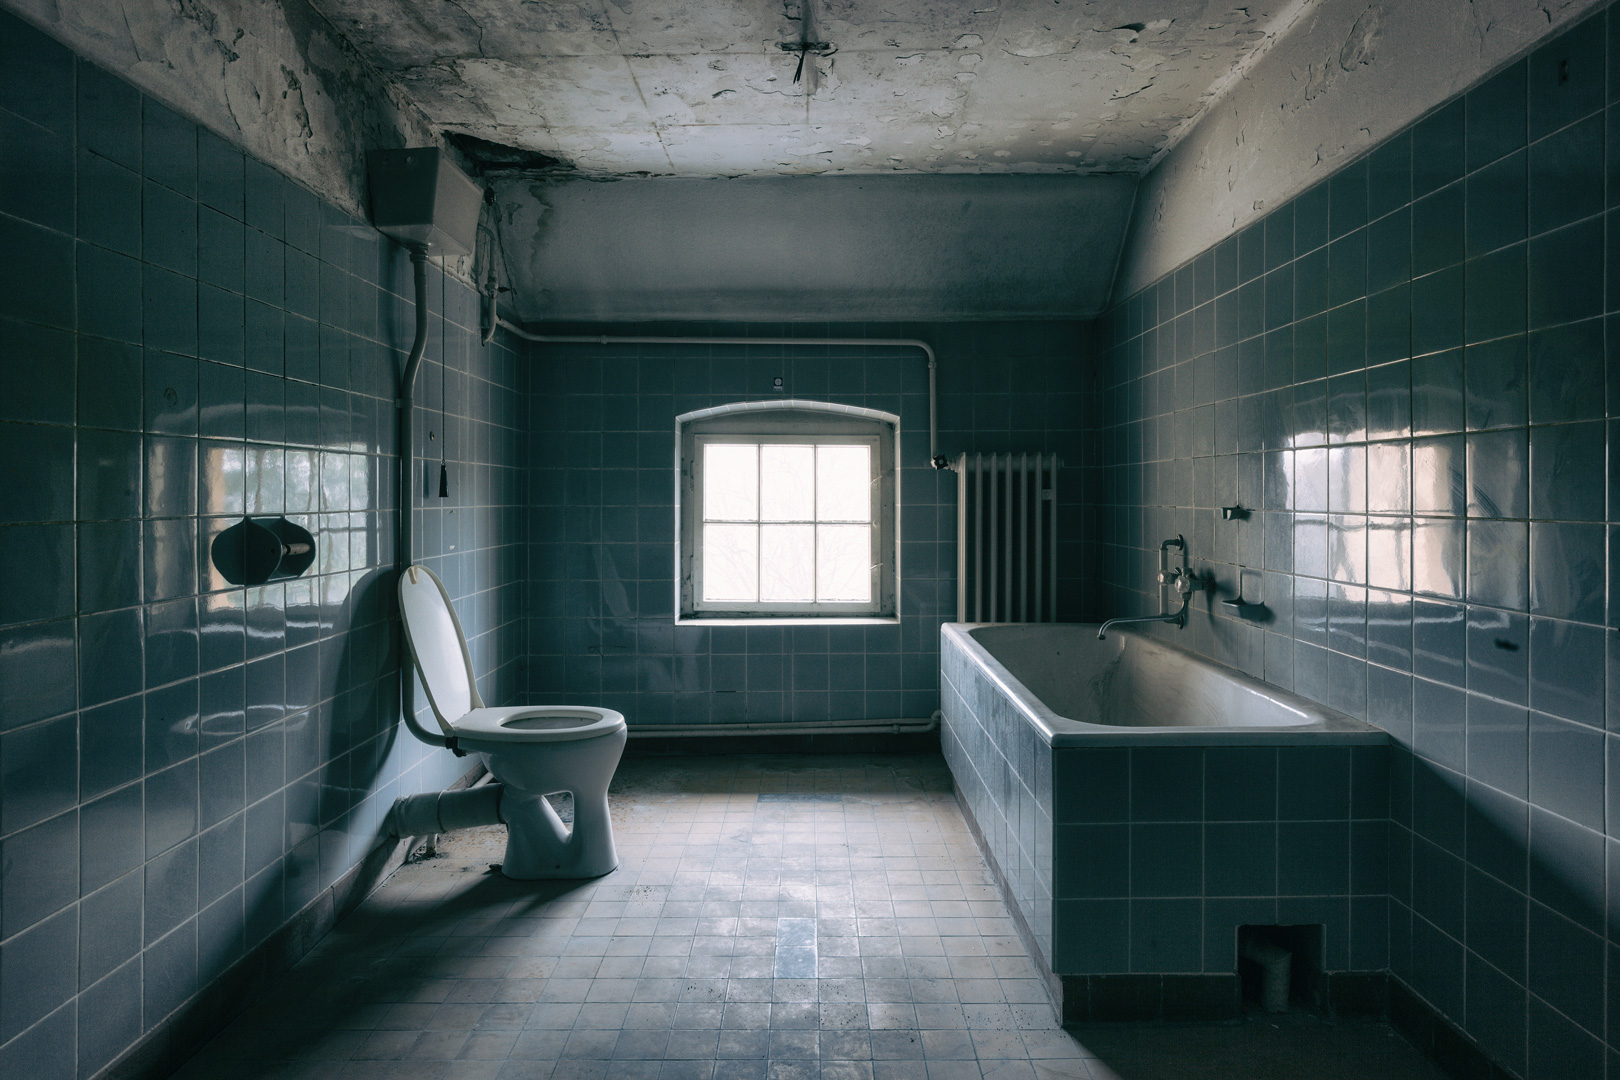 摄影师展示了衰败浴室的鬼魅图像的相关图片